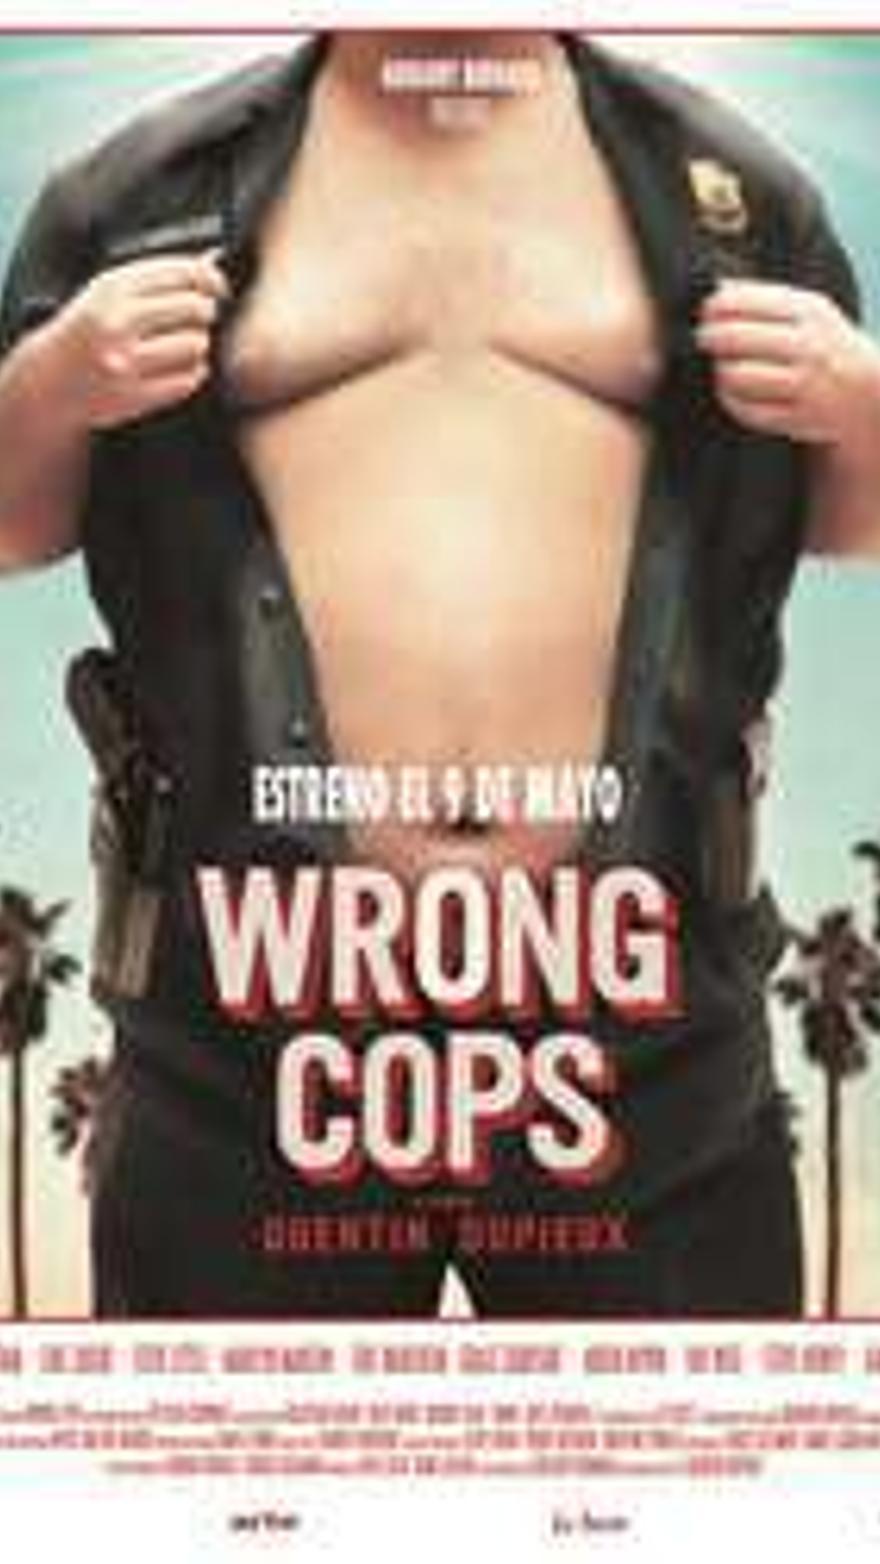 Wrong cops